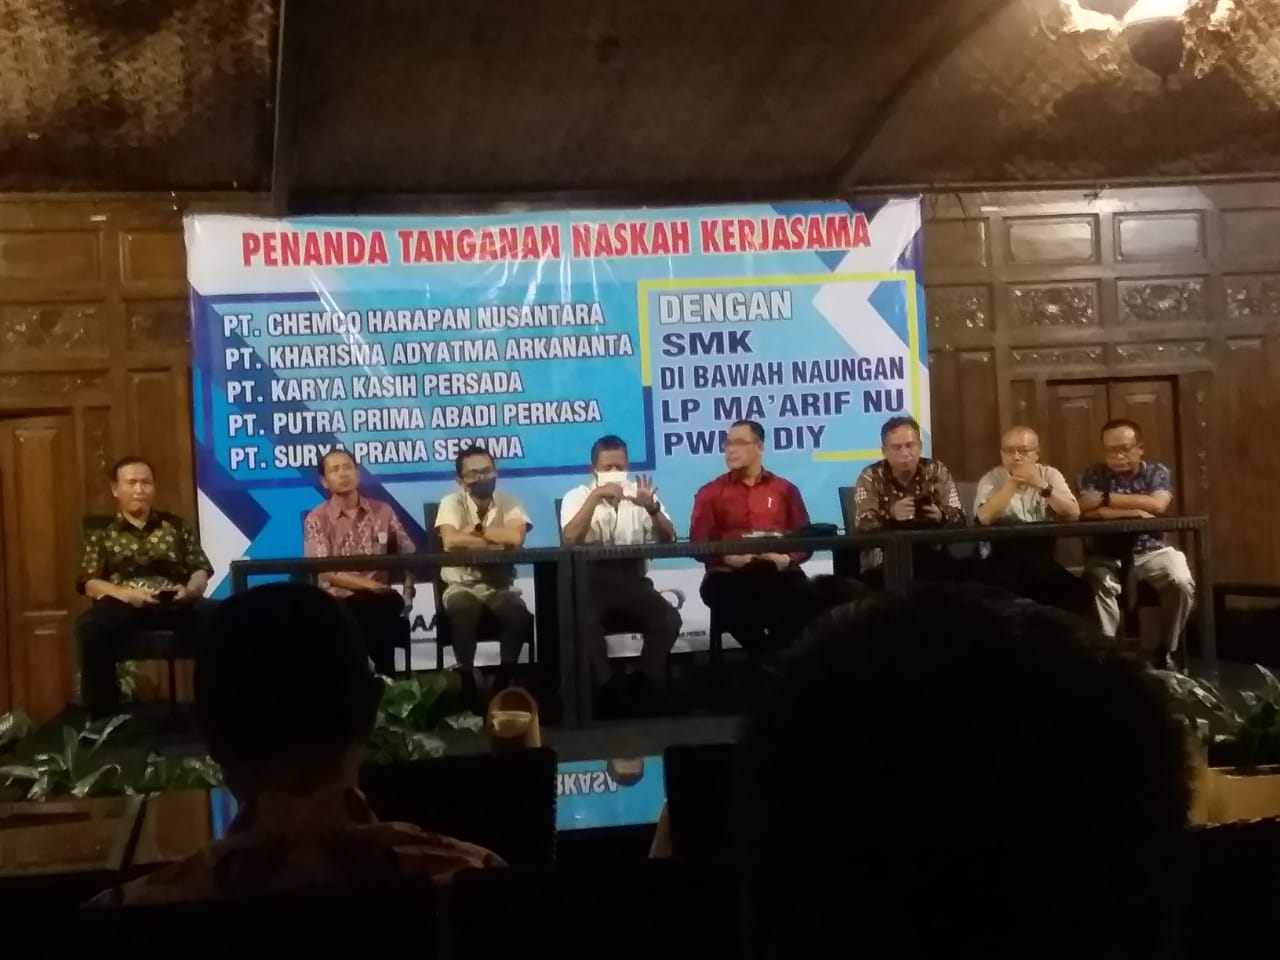 SMK Diponegoro Depok MoU dengan PT Chemco Harapan Nusantara dan Group